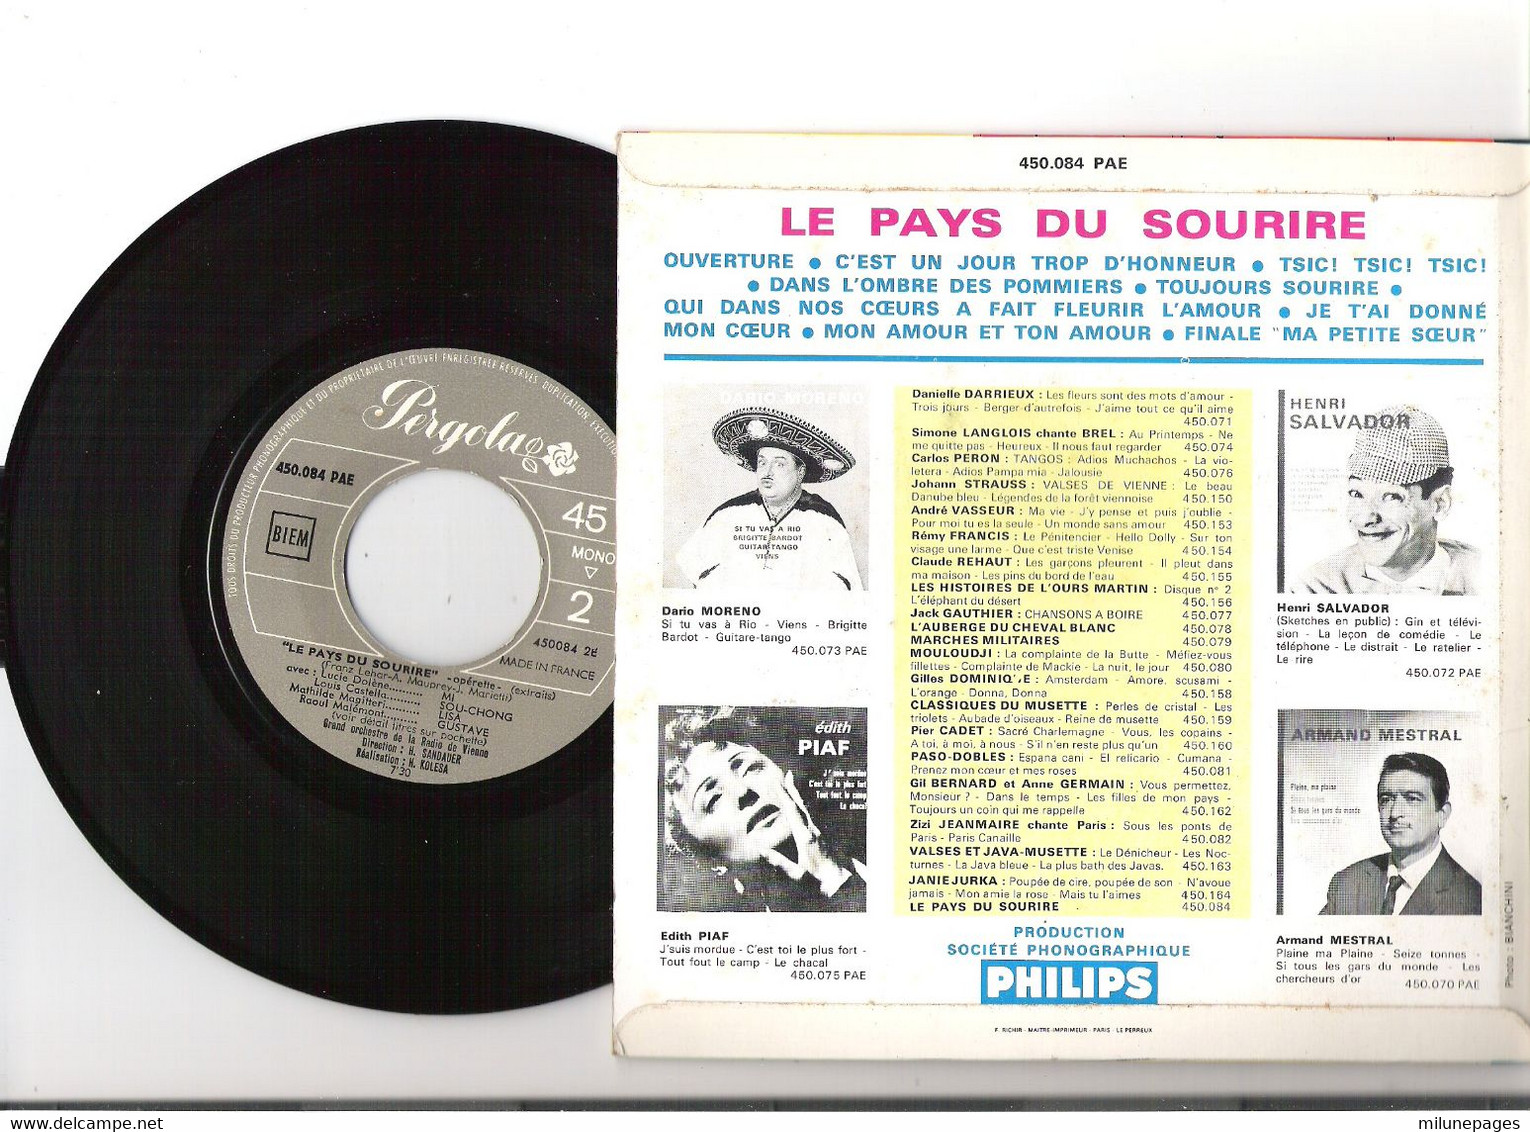 Vinyle 45T EP Extraits Opérette Le Pays Du Sourire Orchestre De De La Radio De Vienne Label Pergola 450084 - Opera